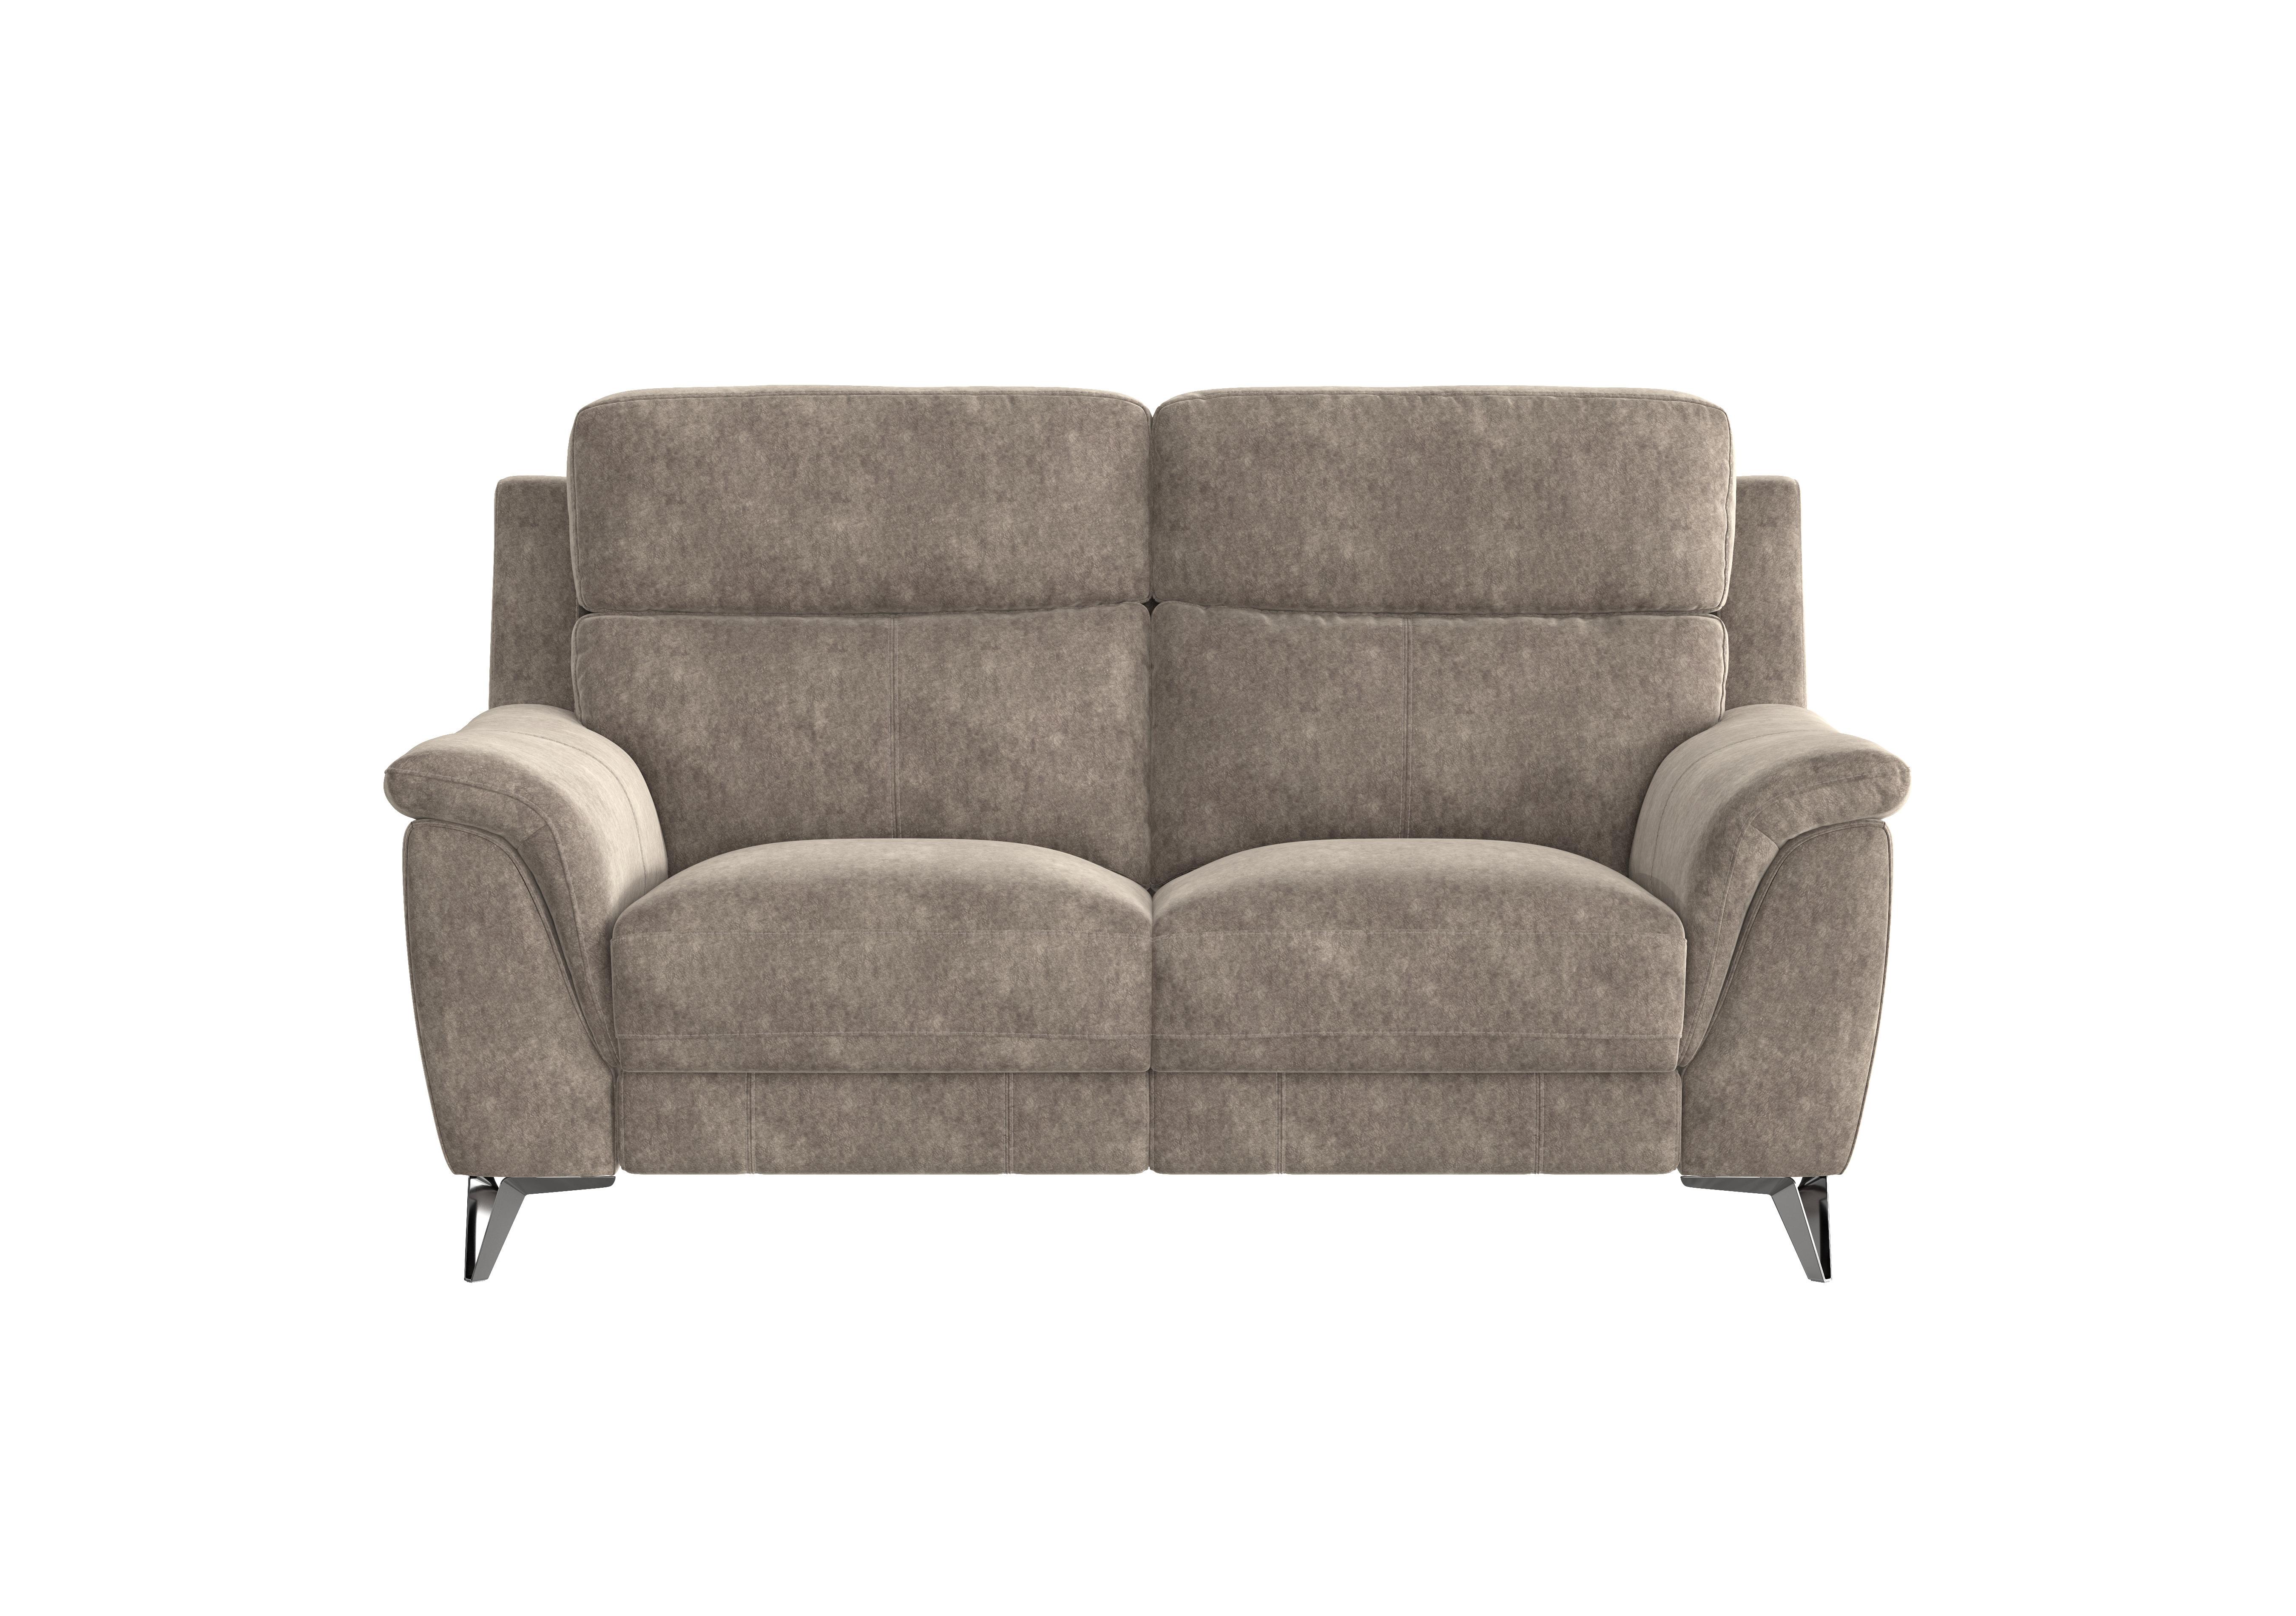 Contempo 2 Seater Fabric Sofa in Bfa-Bnn-R29 Fv1 Mink on Furniture Village